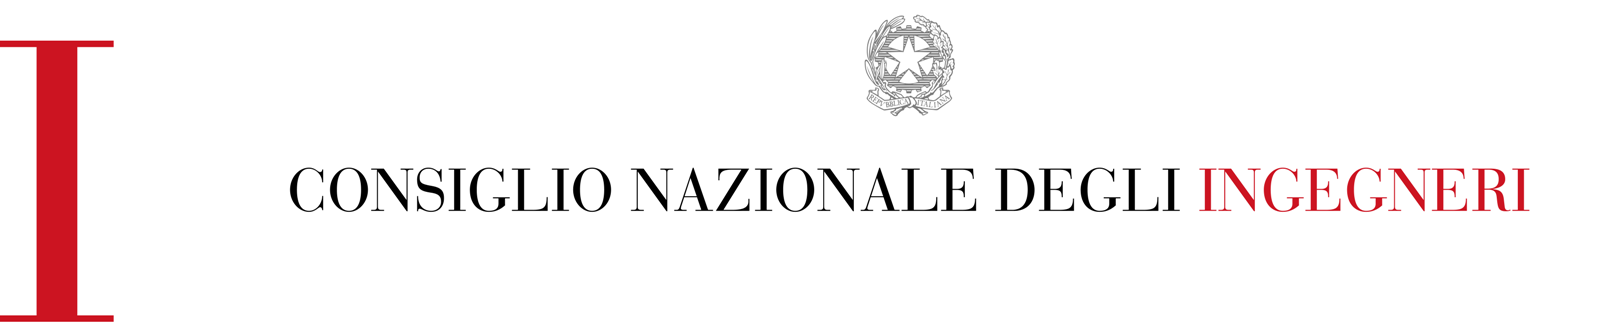 Logo Consiglio Nazionale Ingegneri